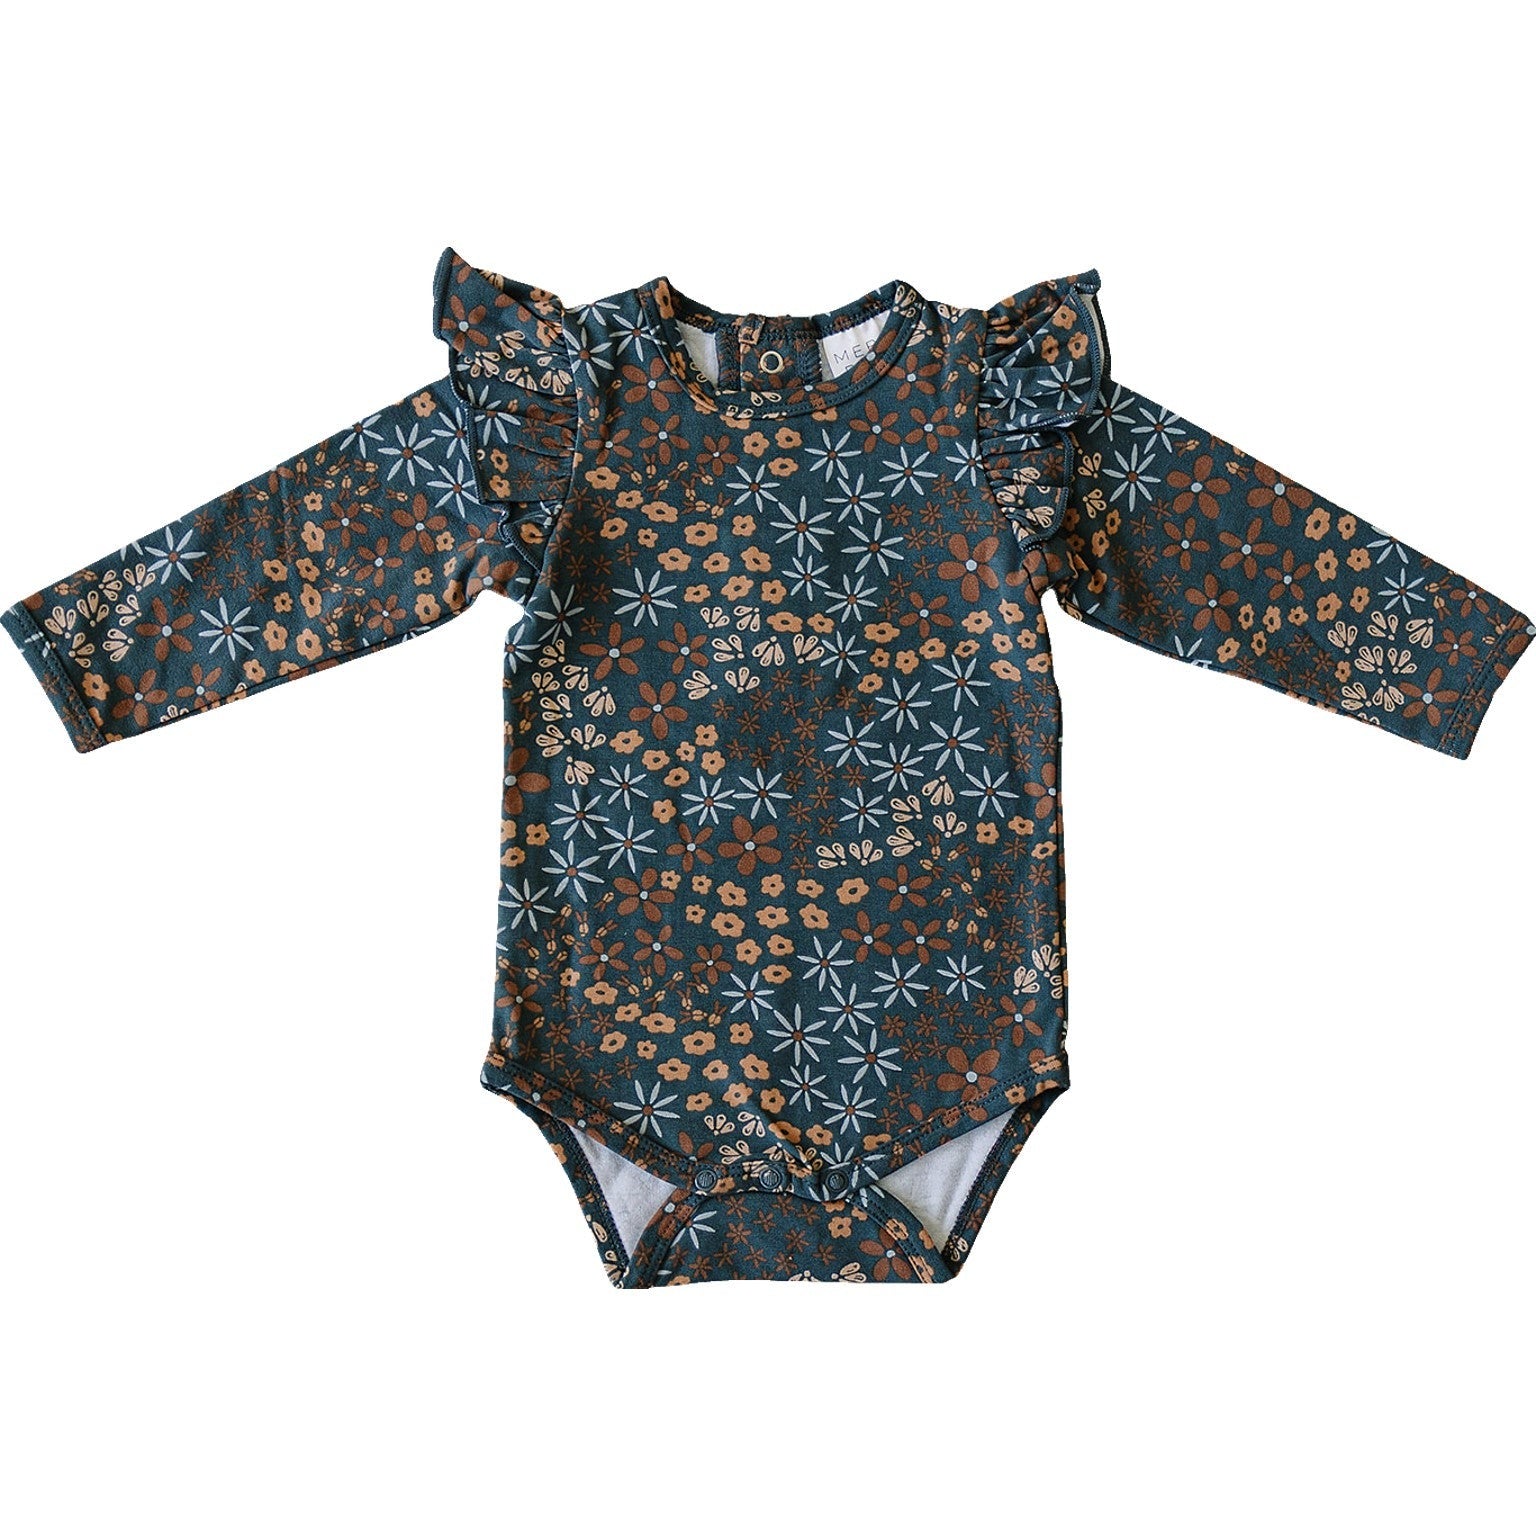 Mebie Baby Ruffle Sleeve Bodysuit - Navy Floral